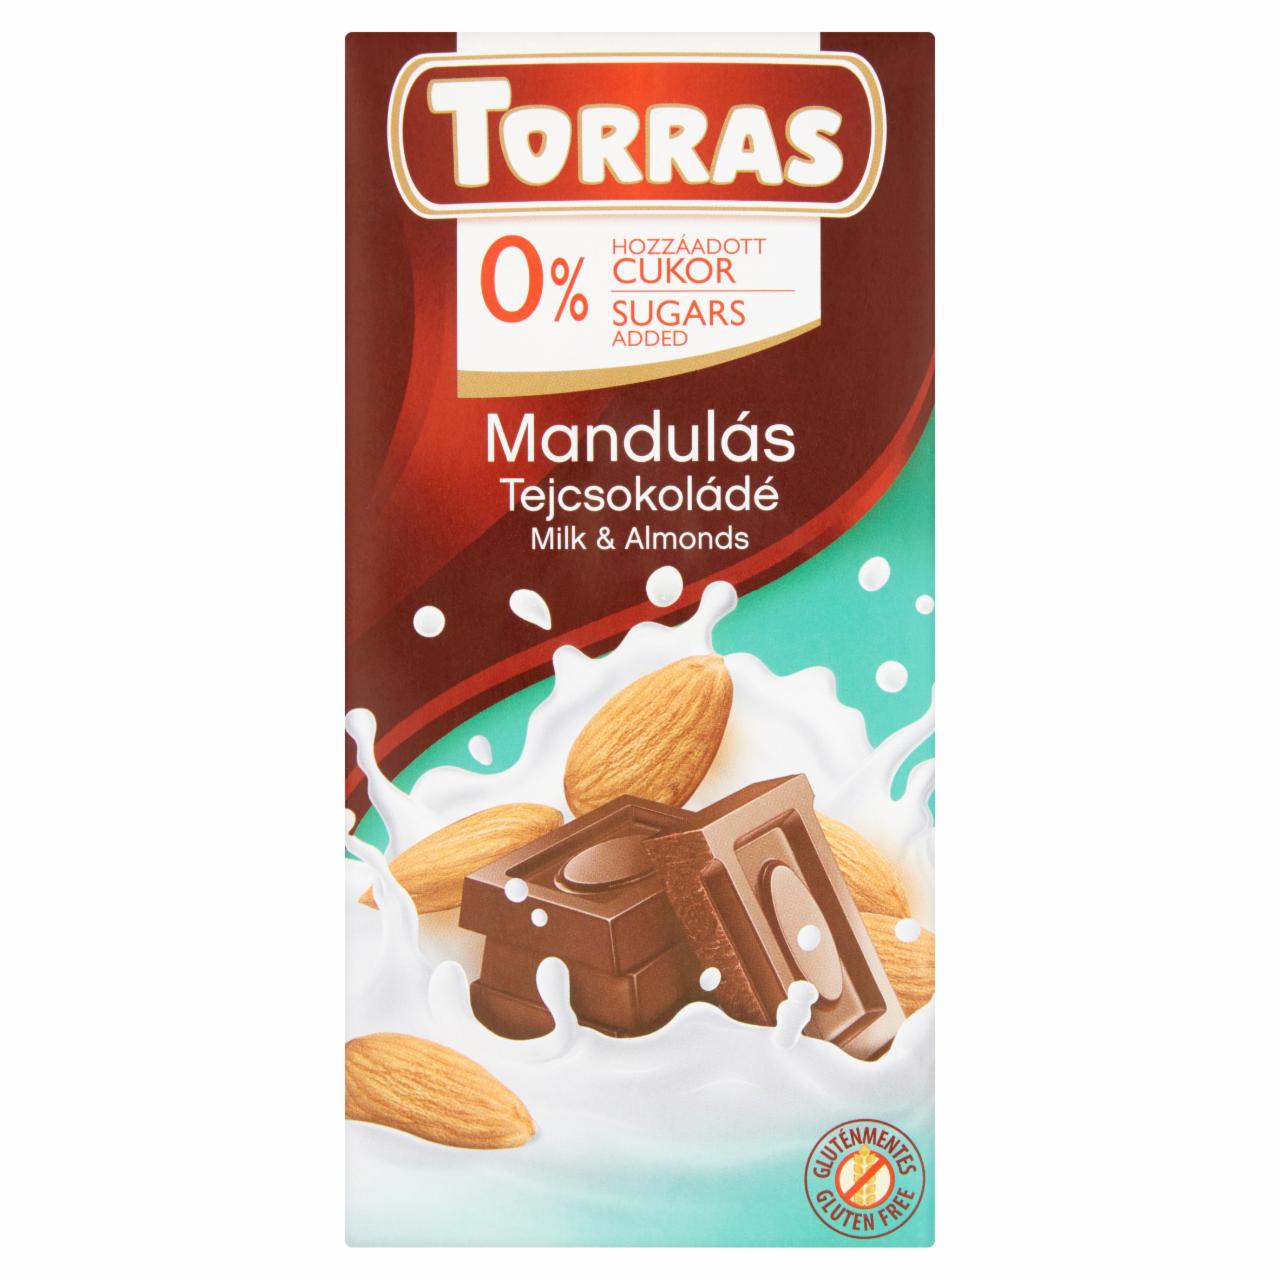 Képek - Mandulás tejcsokoládé hozzáadott cukor nélkül, édesítőszerrel Torras